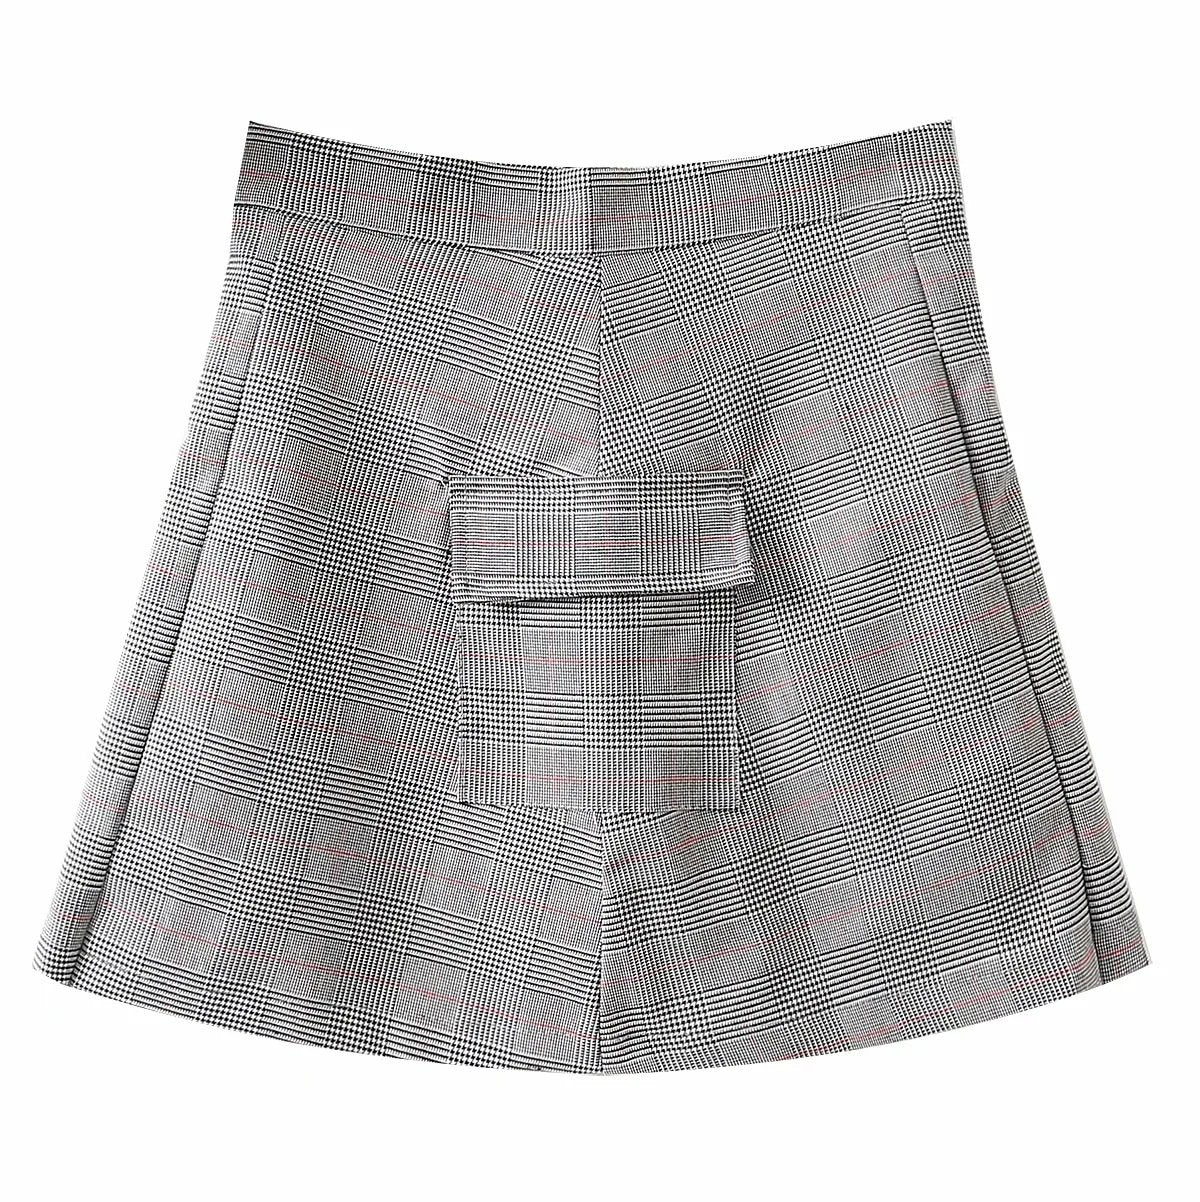 Plaid Pleated Short Skirt